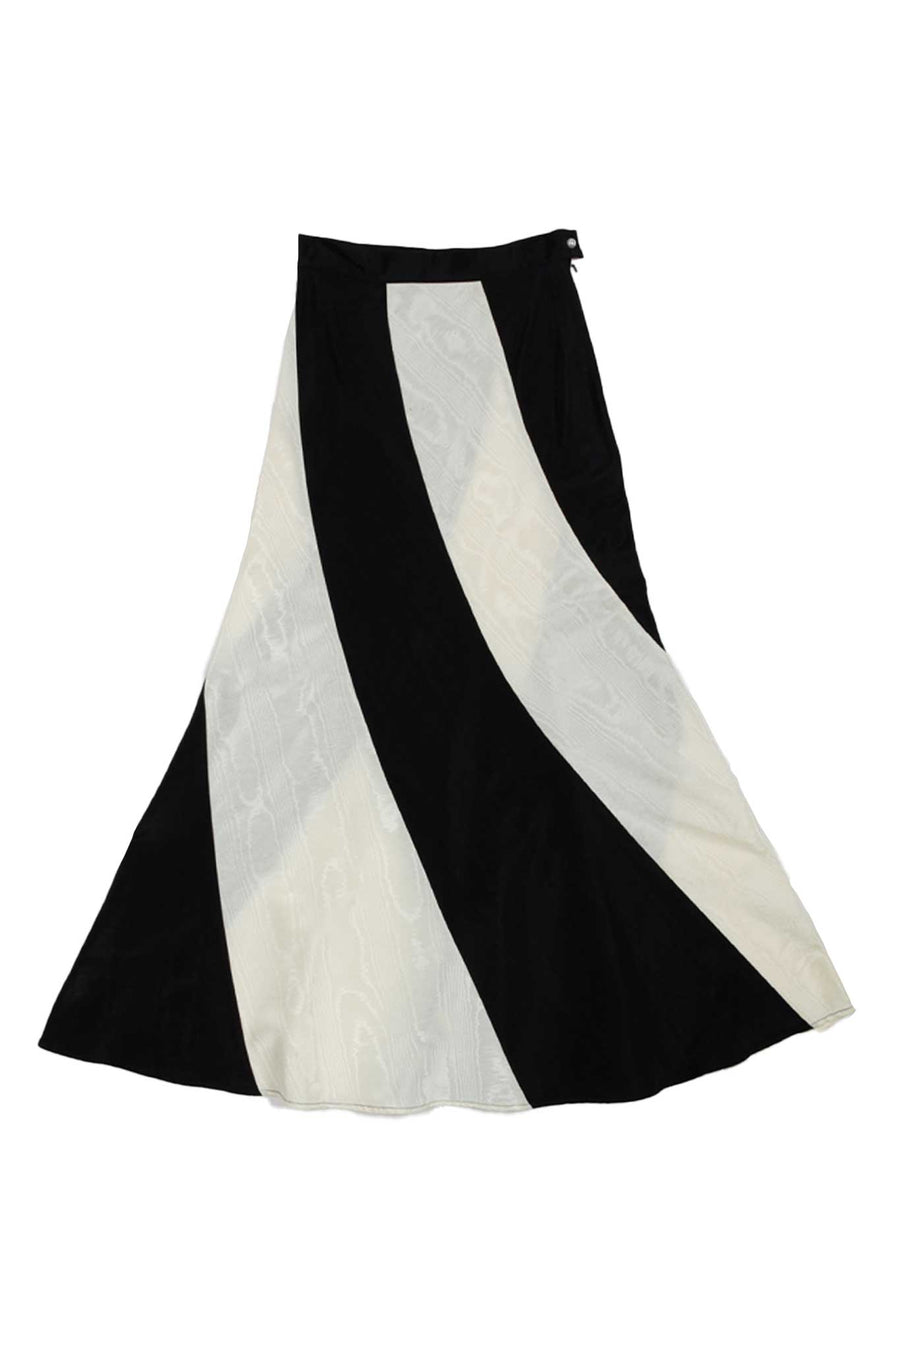 Cera Skirt in Cream & Black Moiré – BATSHEVA